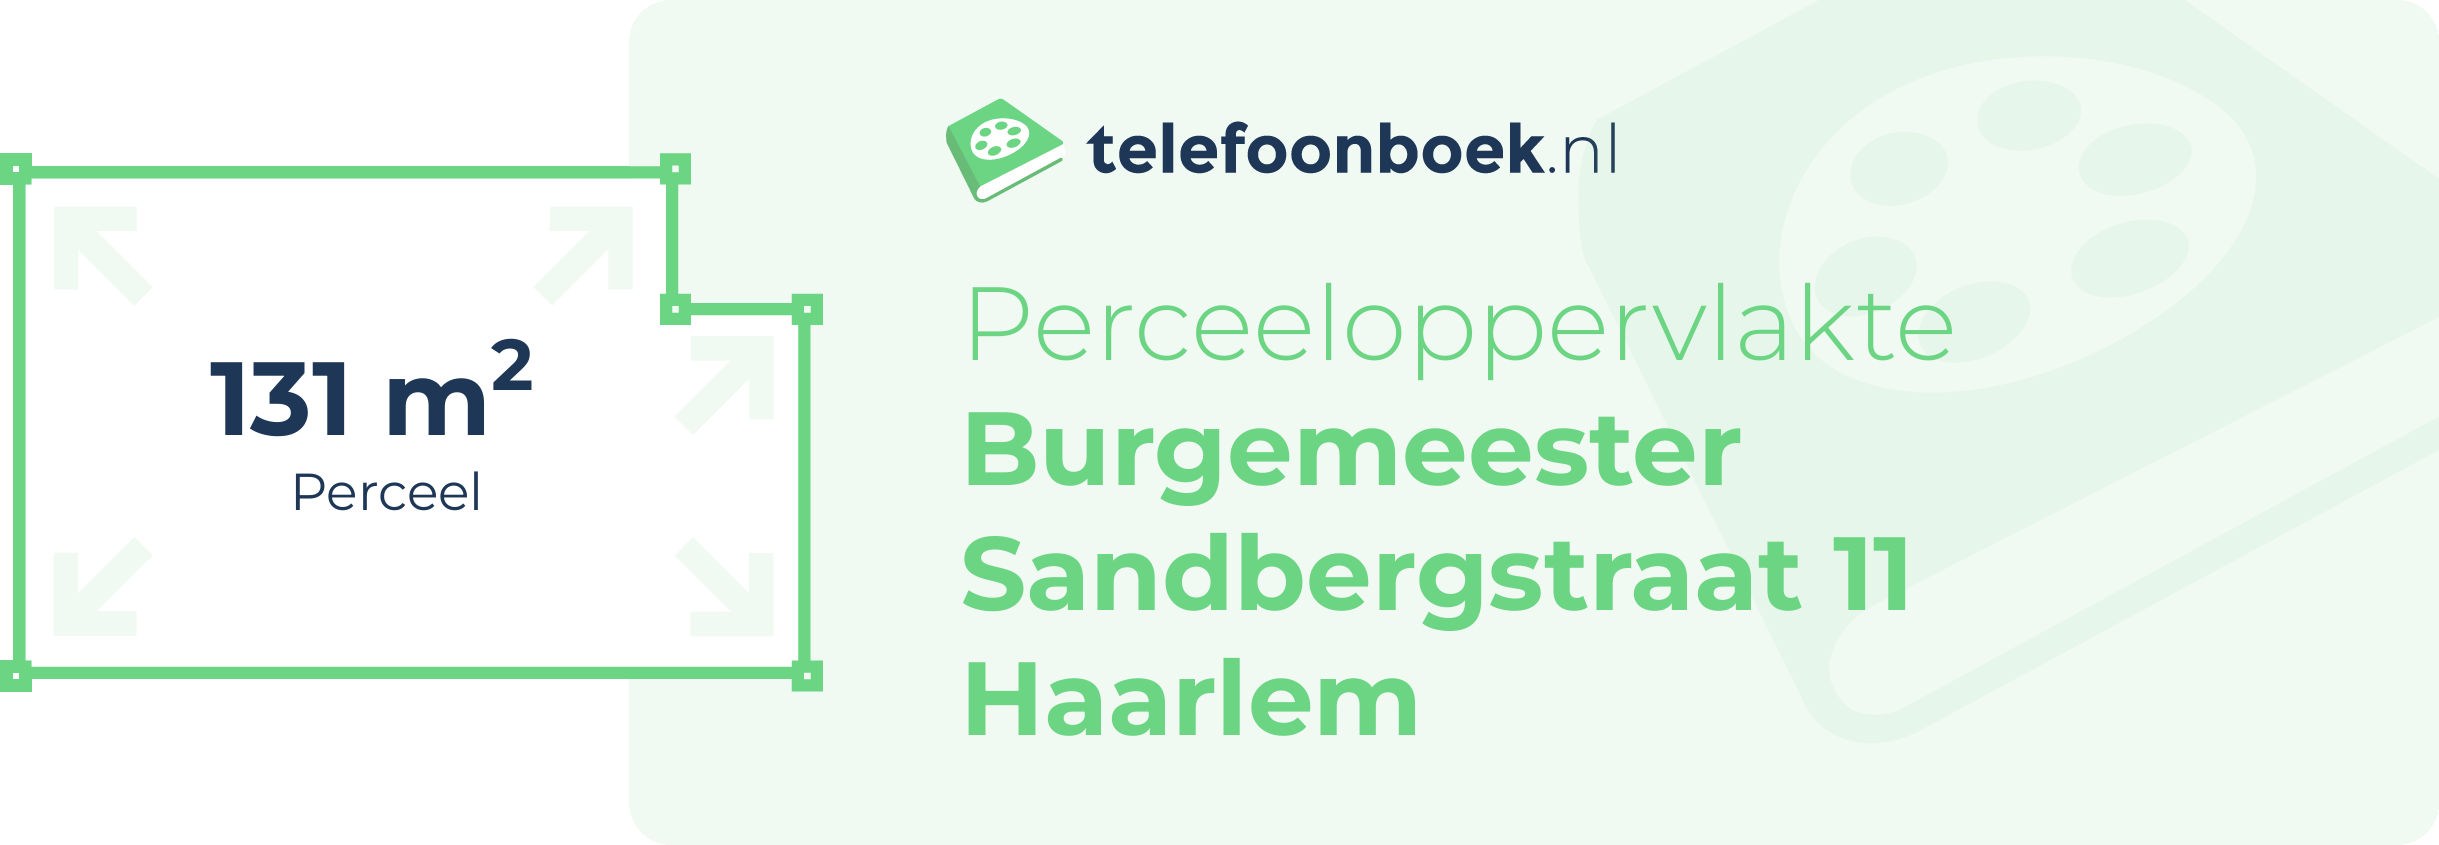 Perceeloppervlakte Burgemeester Sandbergstraat 11 Haarlem